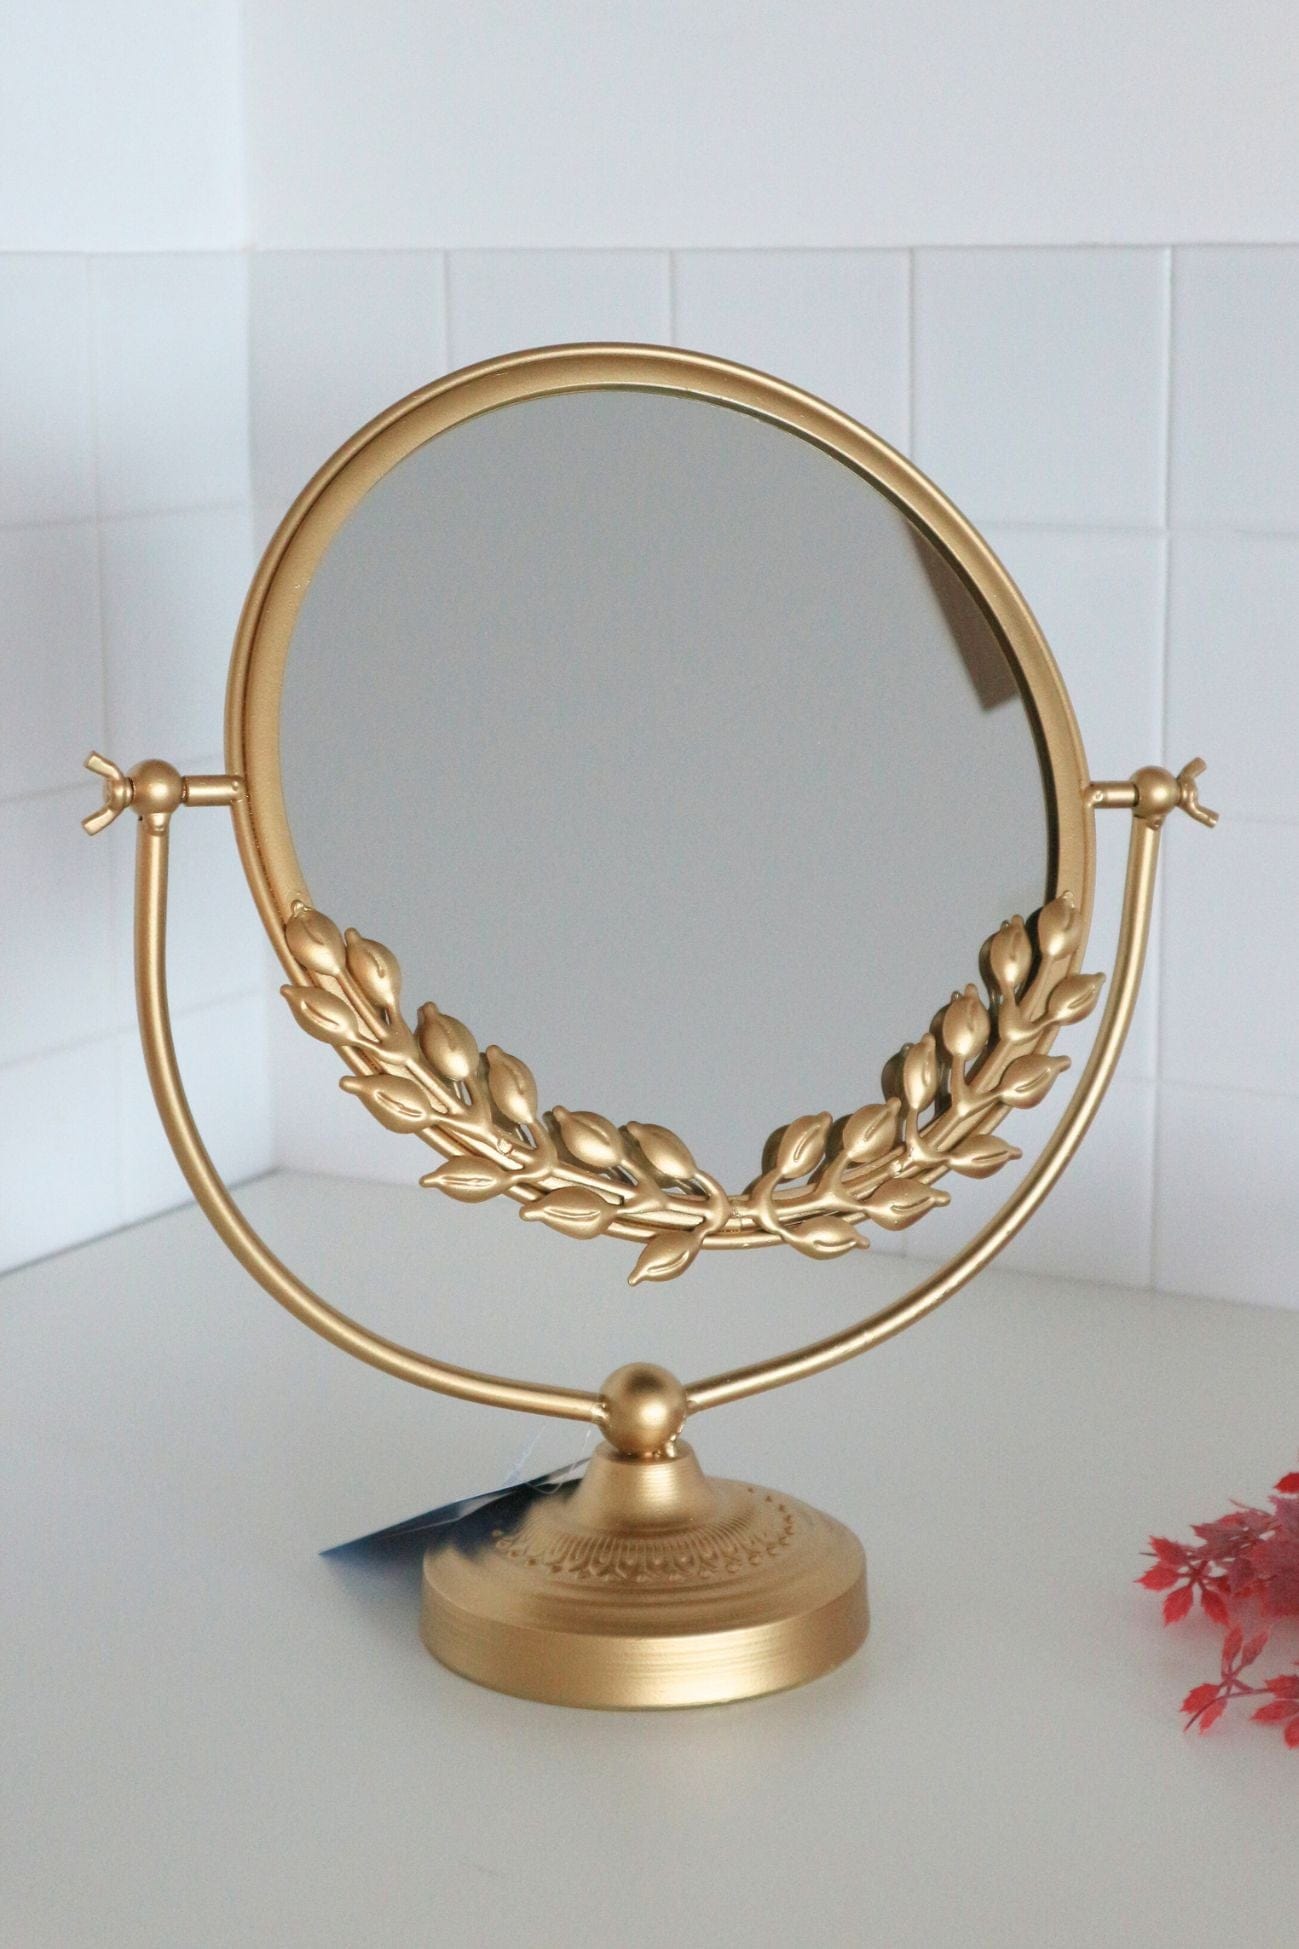 Item International Lucilla Lucilla - Specchio tondo con base e finiture in metallo dorato | Item International